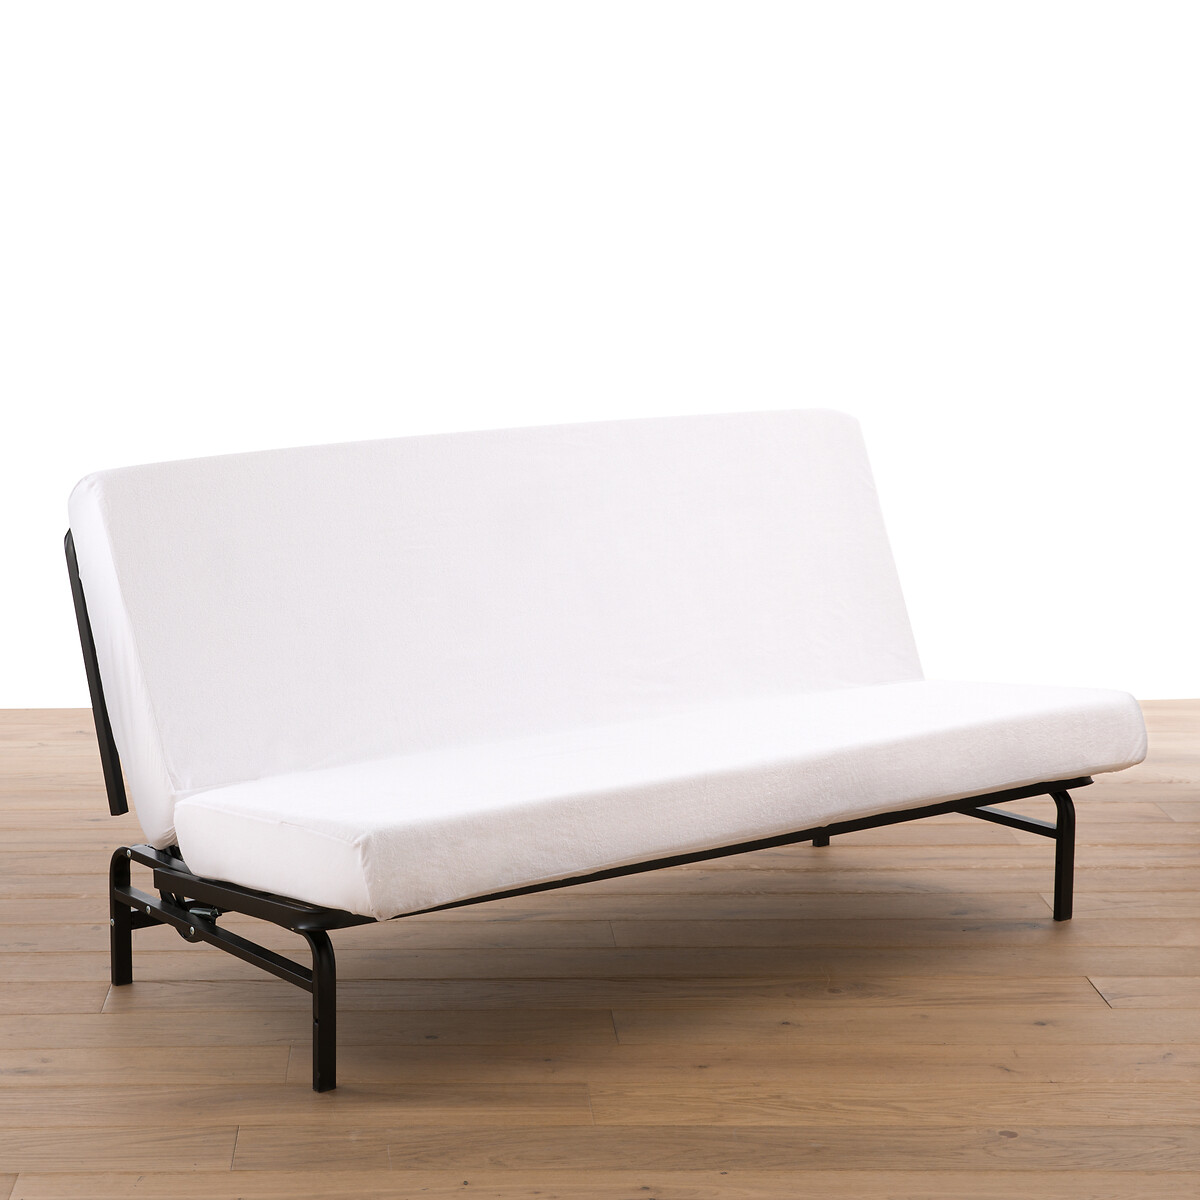 Простыня Для раскладного дивана из махровой ткани и полиуретана 130 x 190 см белый